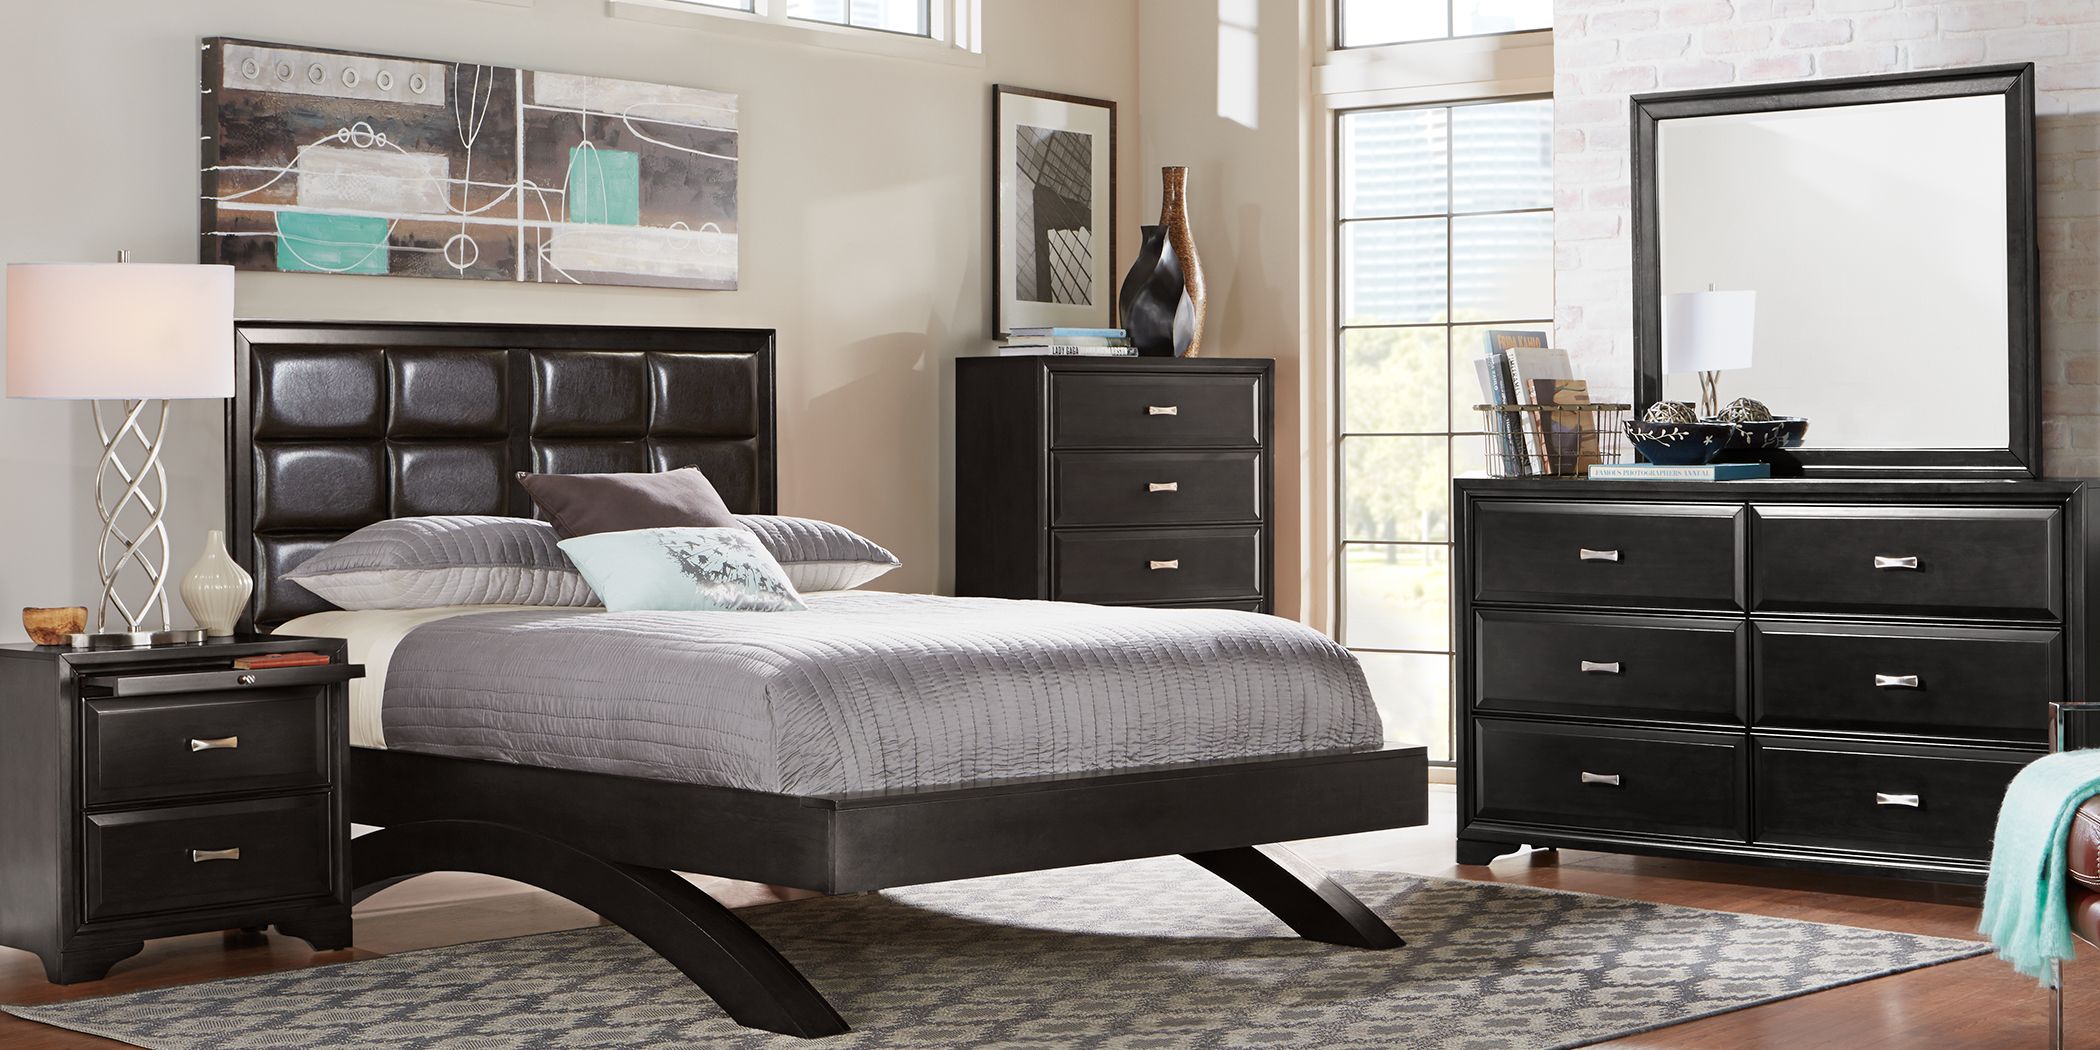 belcourt bedroom furniture reviews